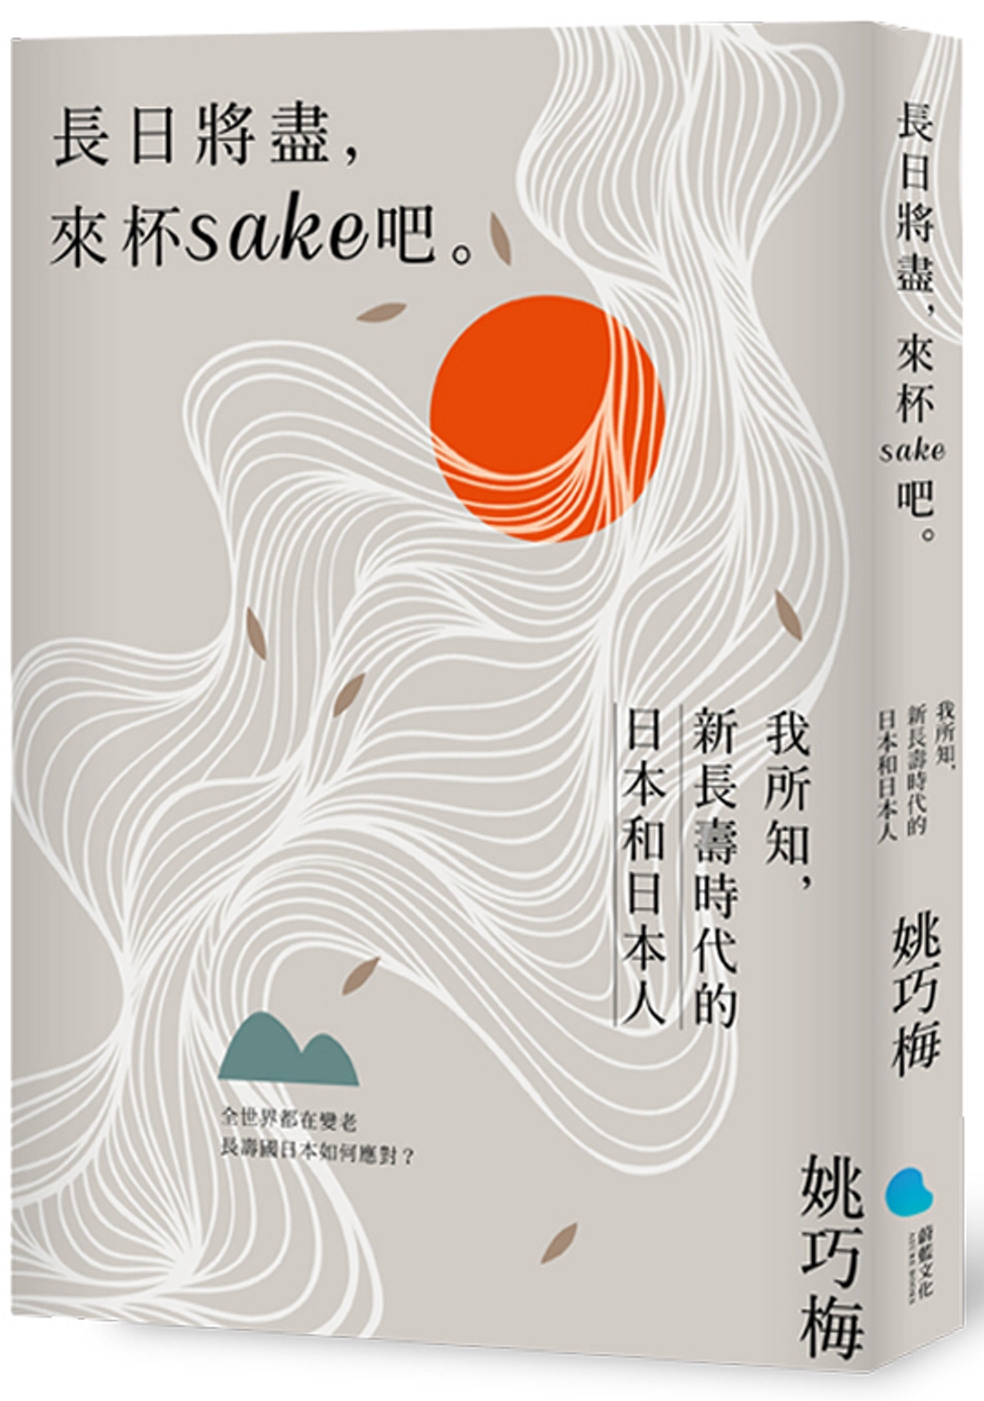 長日將盡，來杯sake 吧。：我所知，新長壽時代的日本和日本人